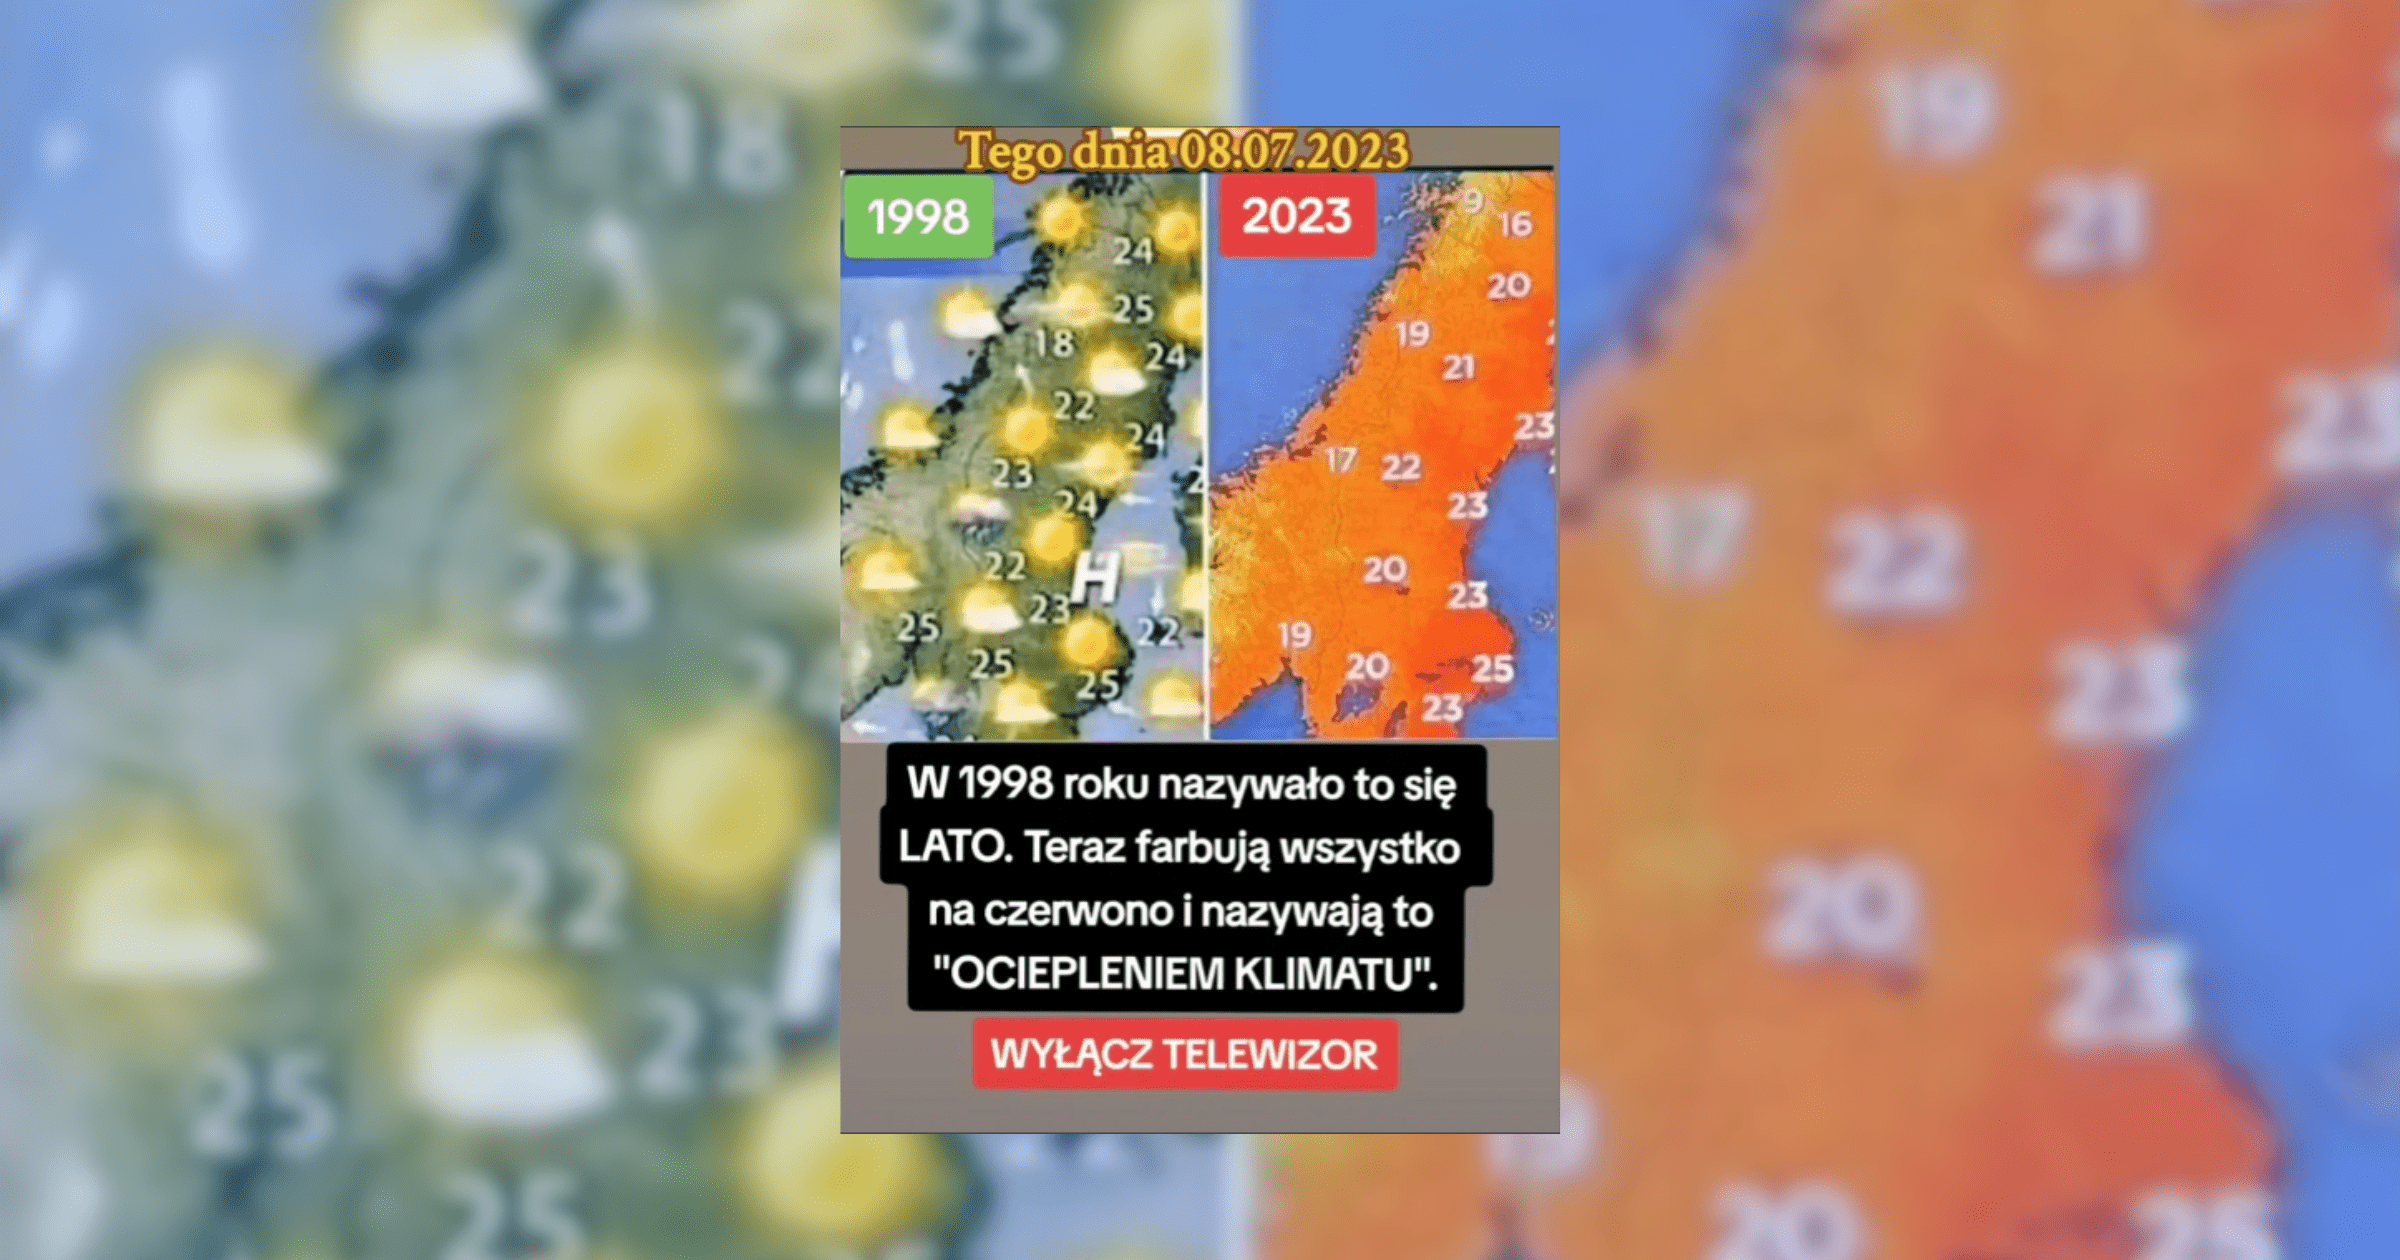 Zrzut ekranu z tiktoka, który przedstawia dwie mapki, jedną z rzekomo 1996 roku, a druga - 2023 roku. Pod nimi umieszczono tekst: „W 1998 roku nazywało to się LATO. Teraz farbują wszystko na czerwono i nazywają to “OCIEPLENIEM KLIMATU”. WYŁĄCZ TELEWIZOR”.